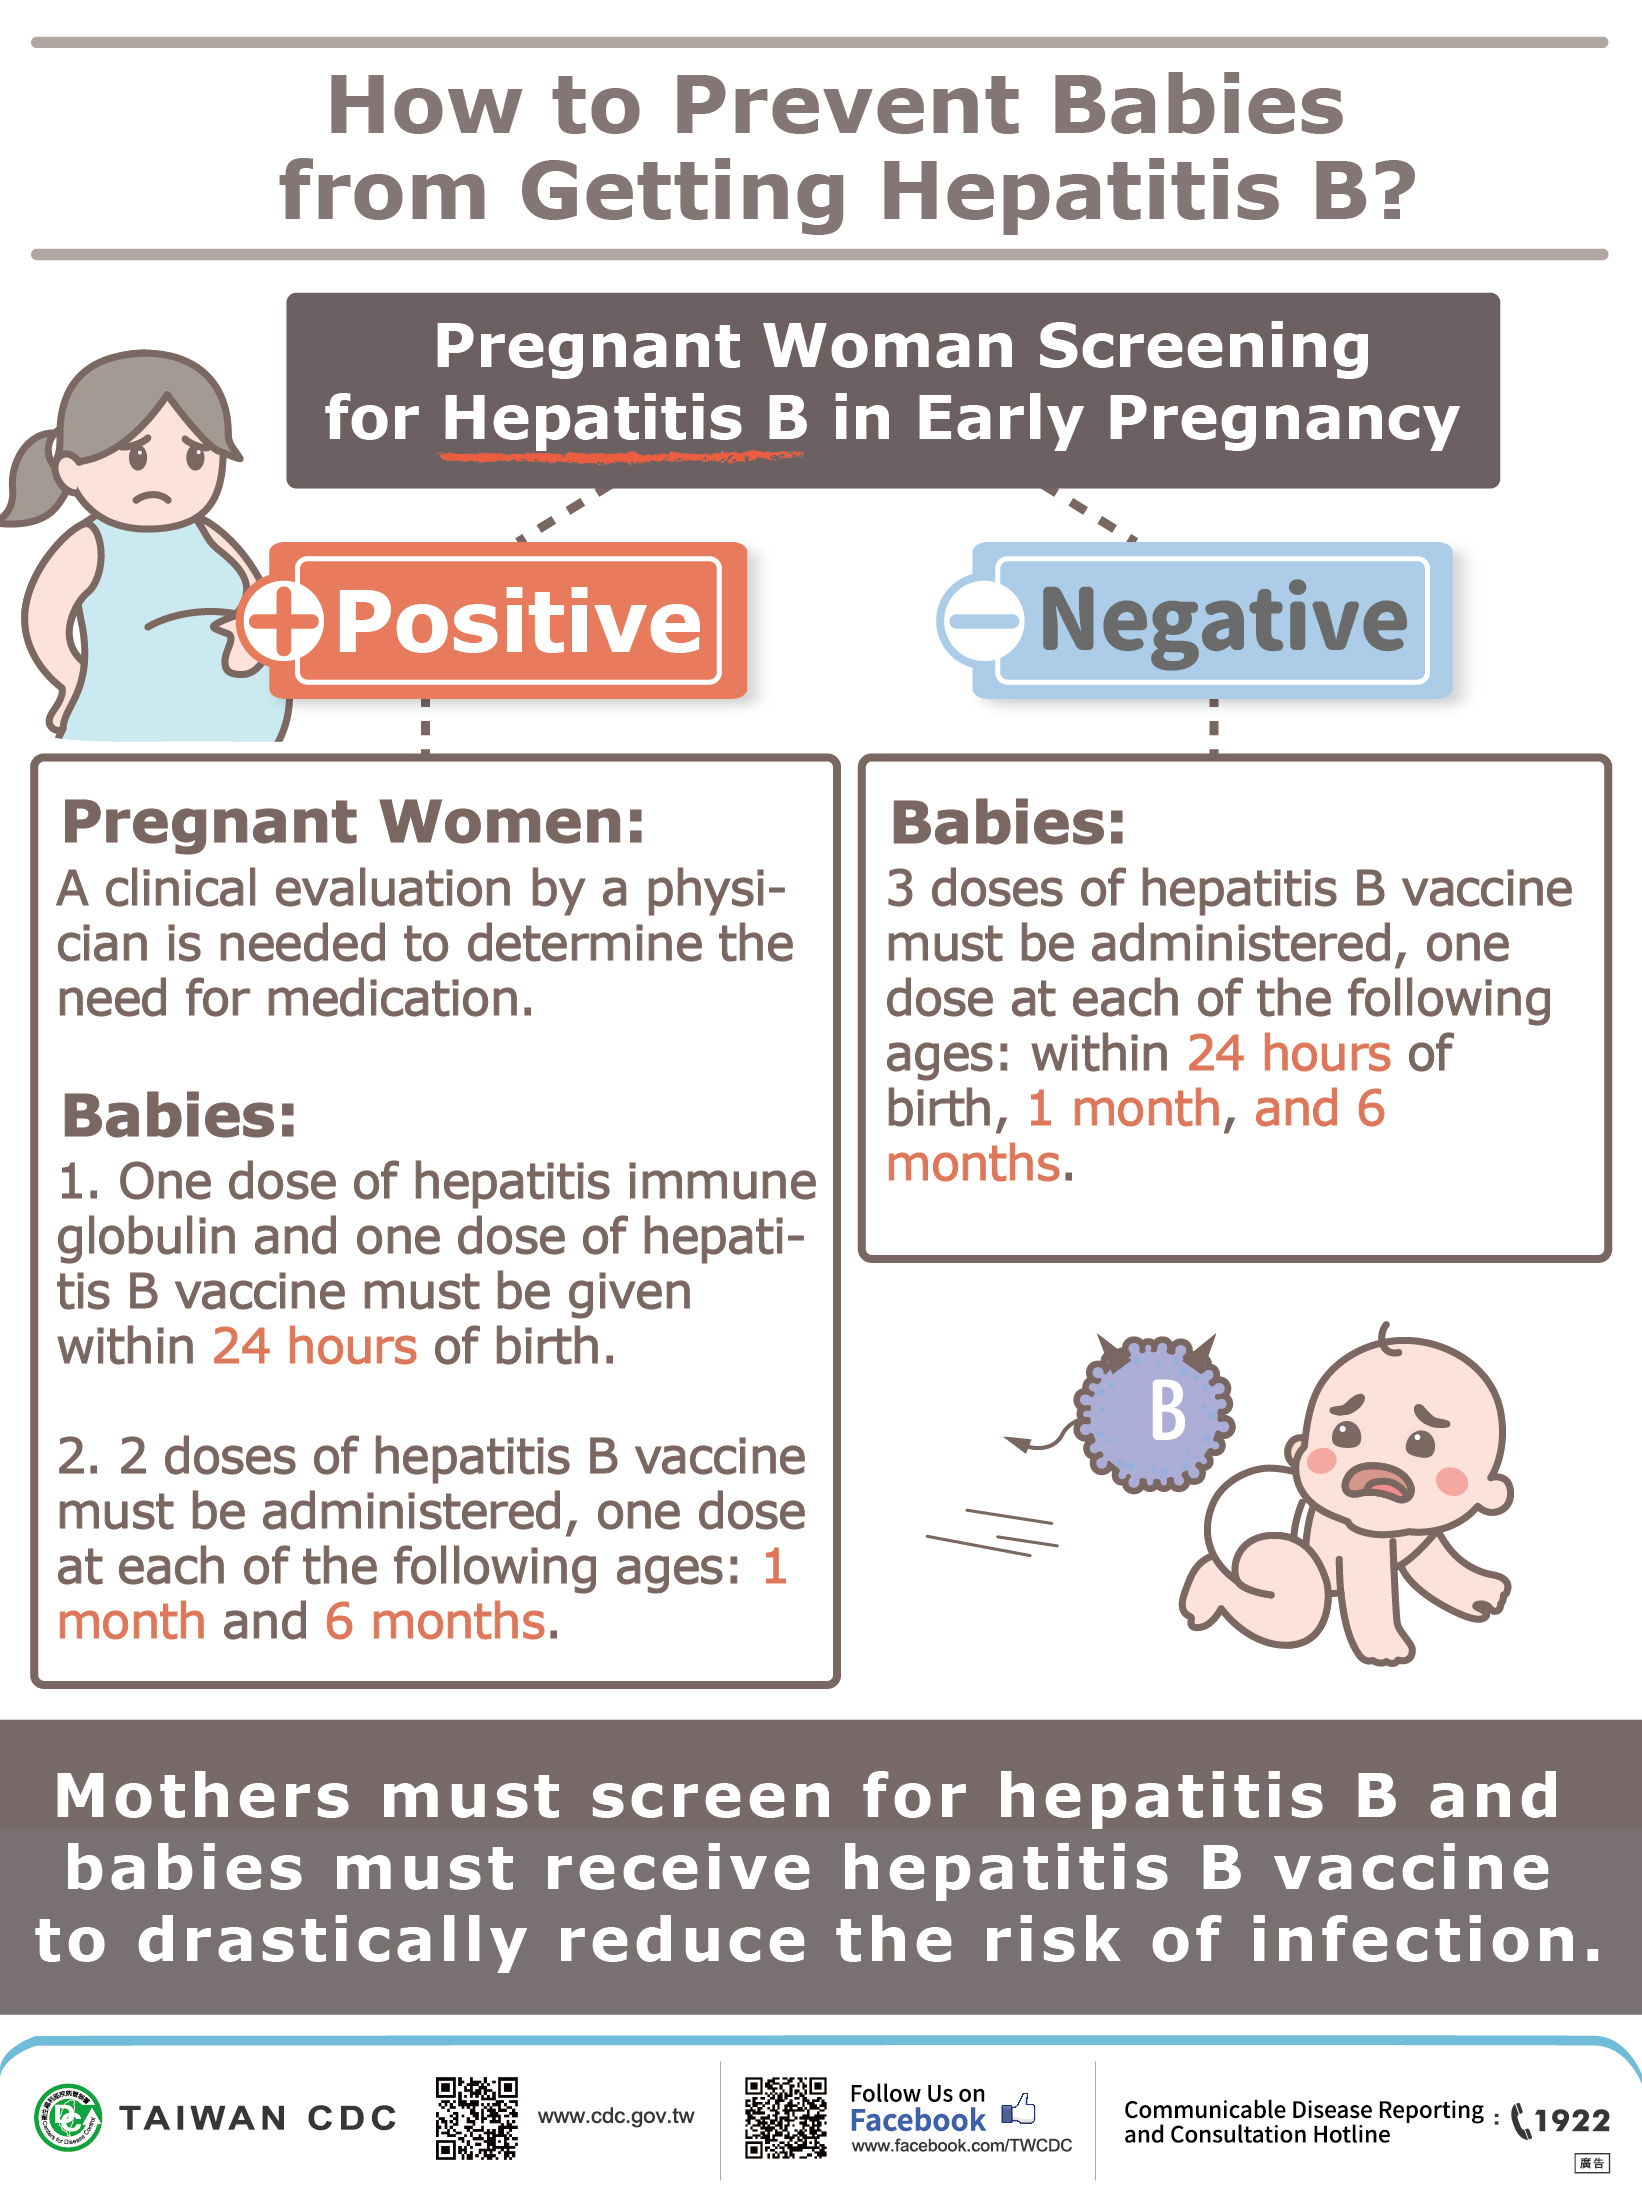 How do pregnant women lower babies’ risk of hepatitis B infection.jpg